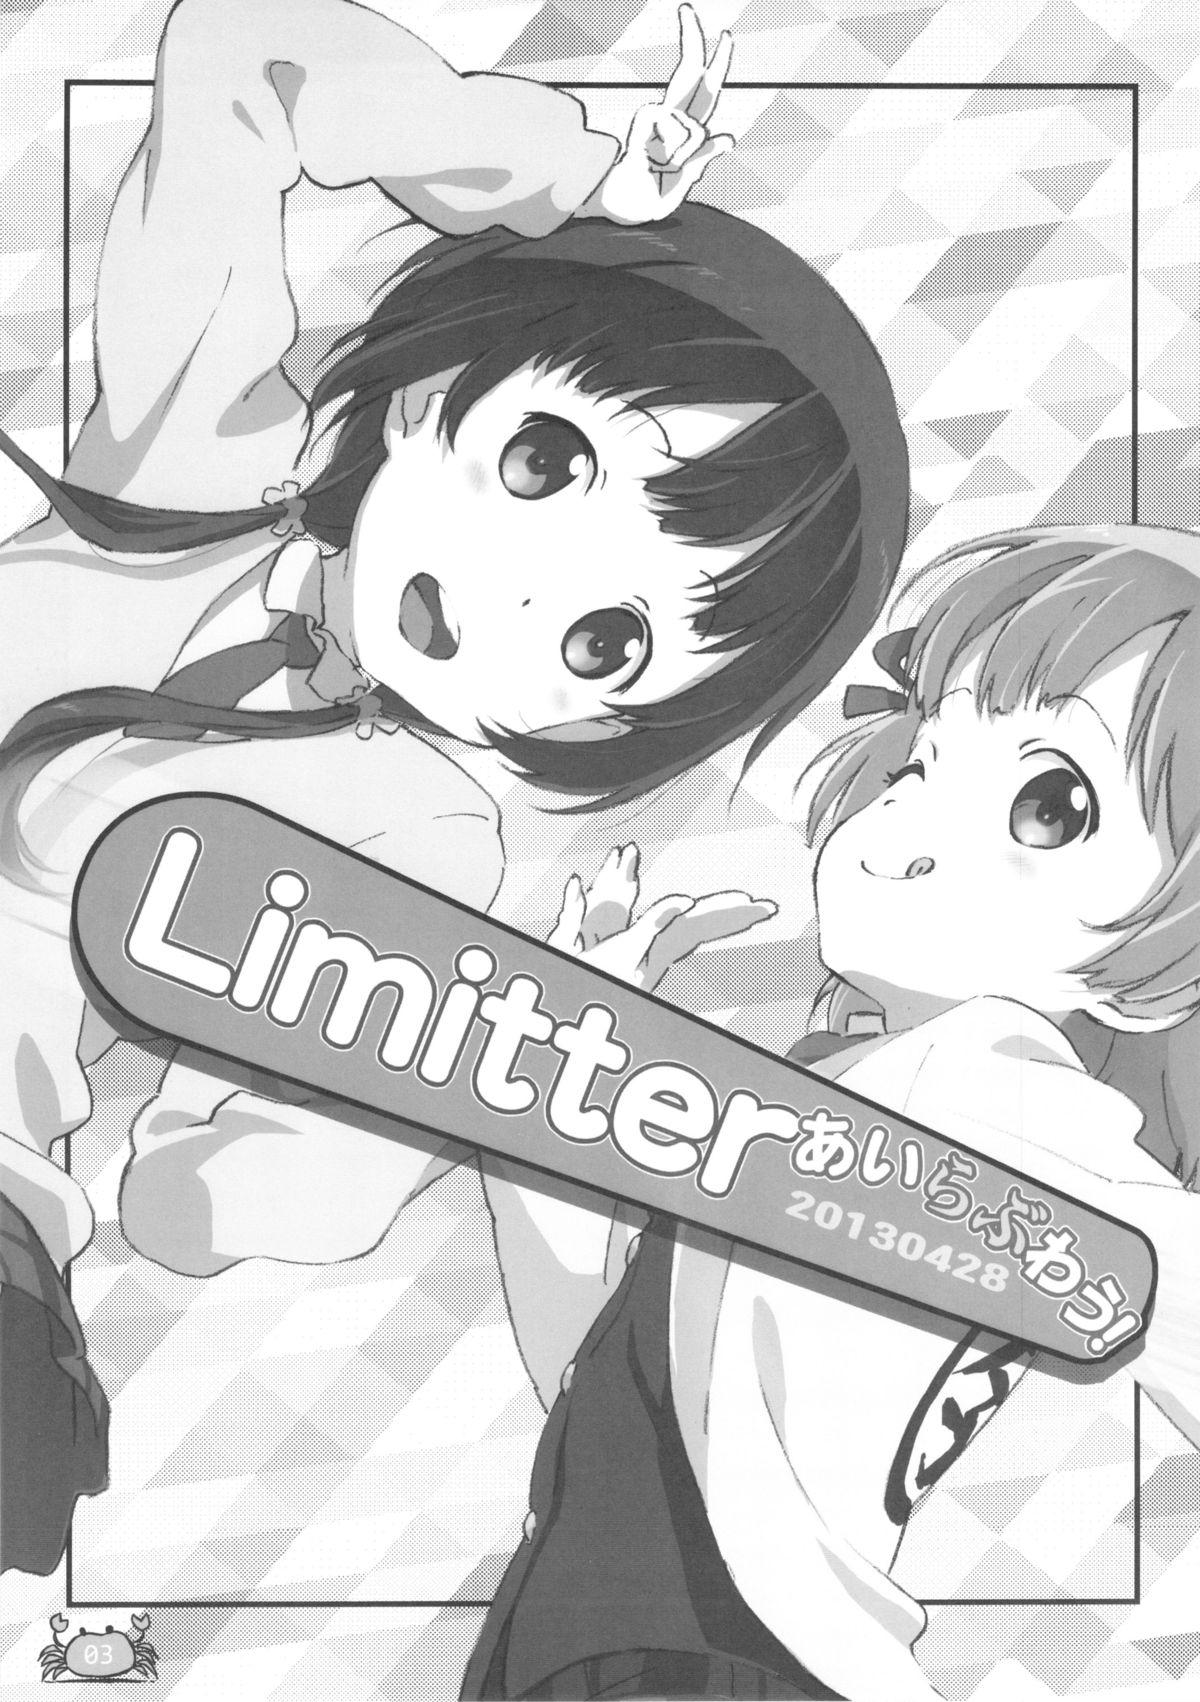 Pounded Limitter I Love Wau! 20130428 - Aiura Art - Page 3